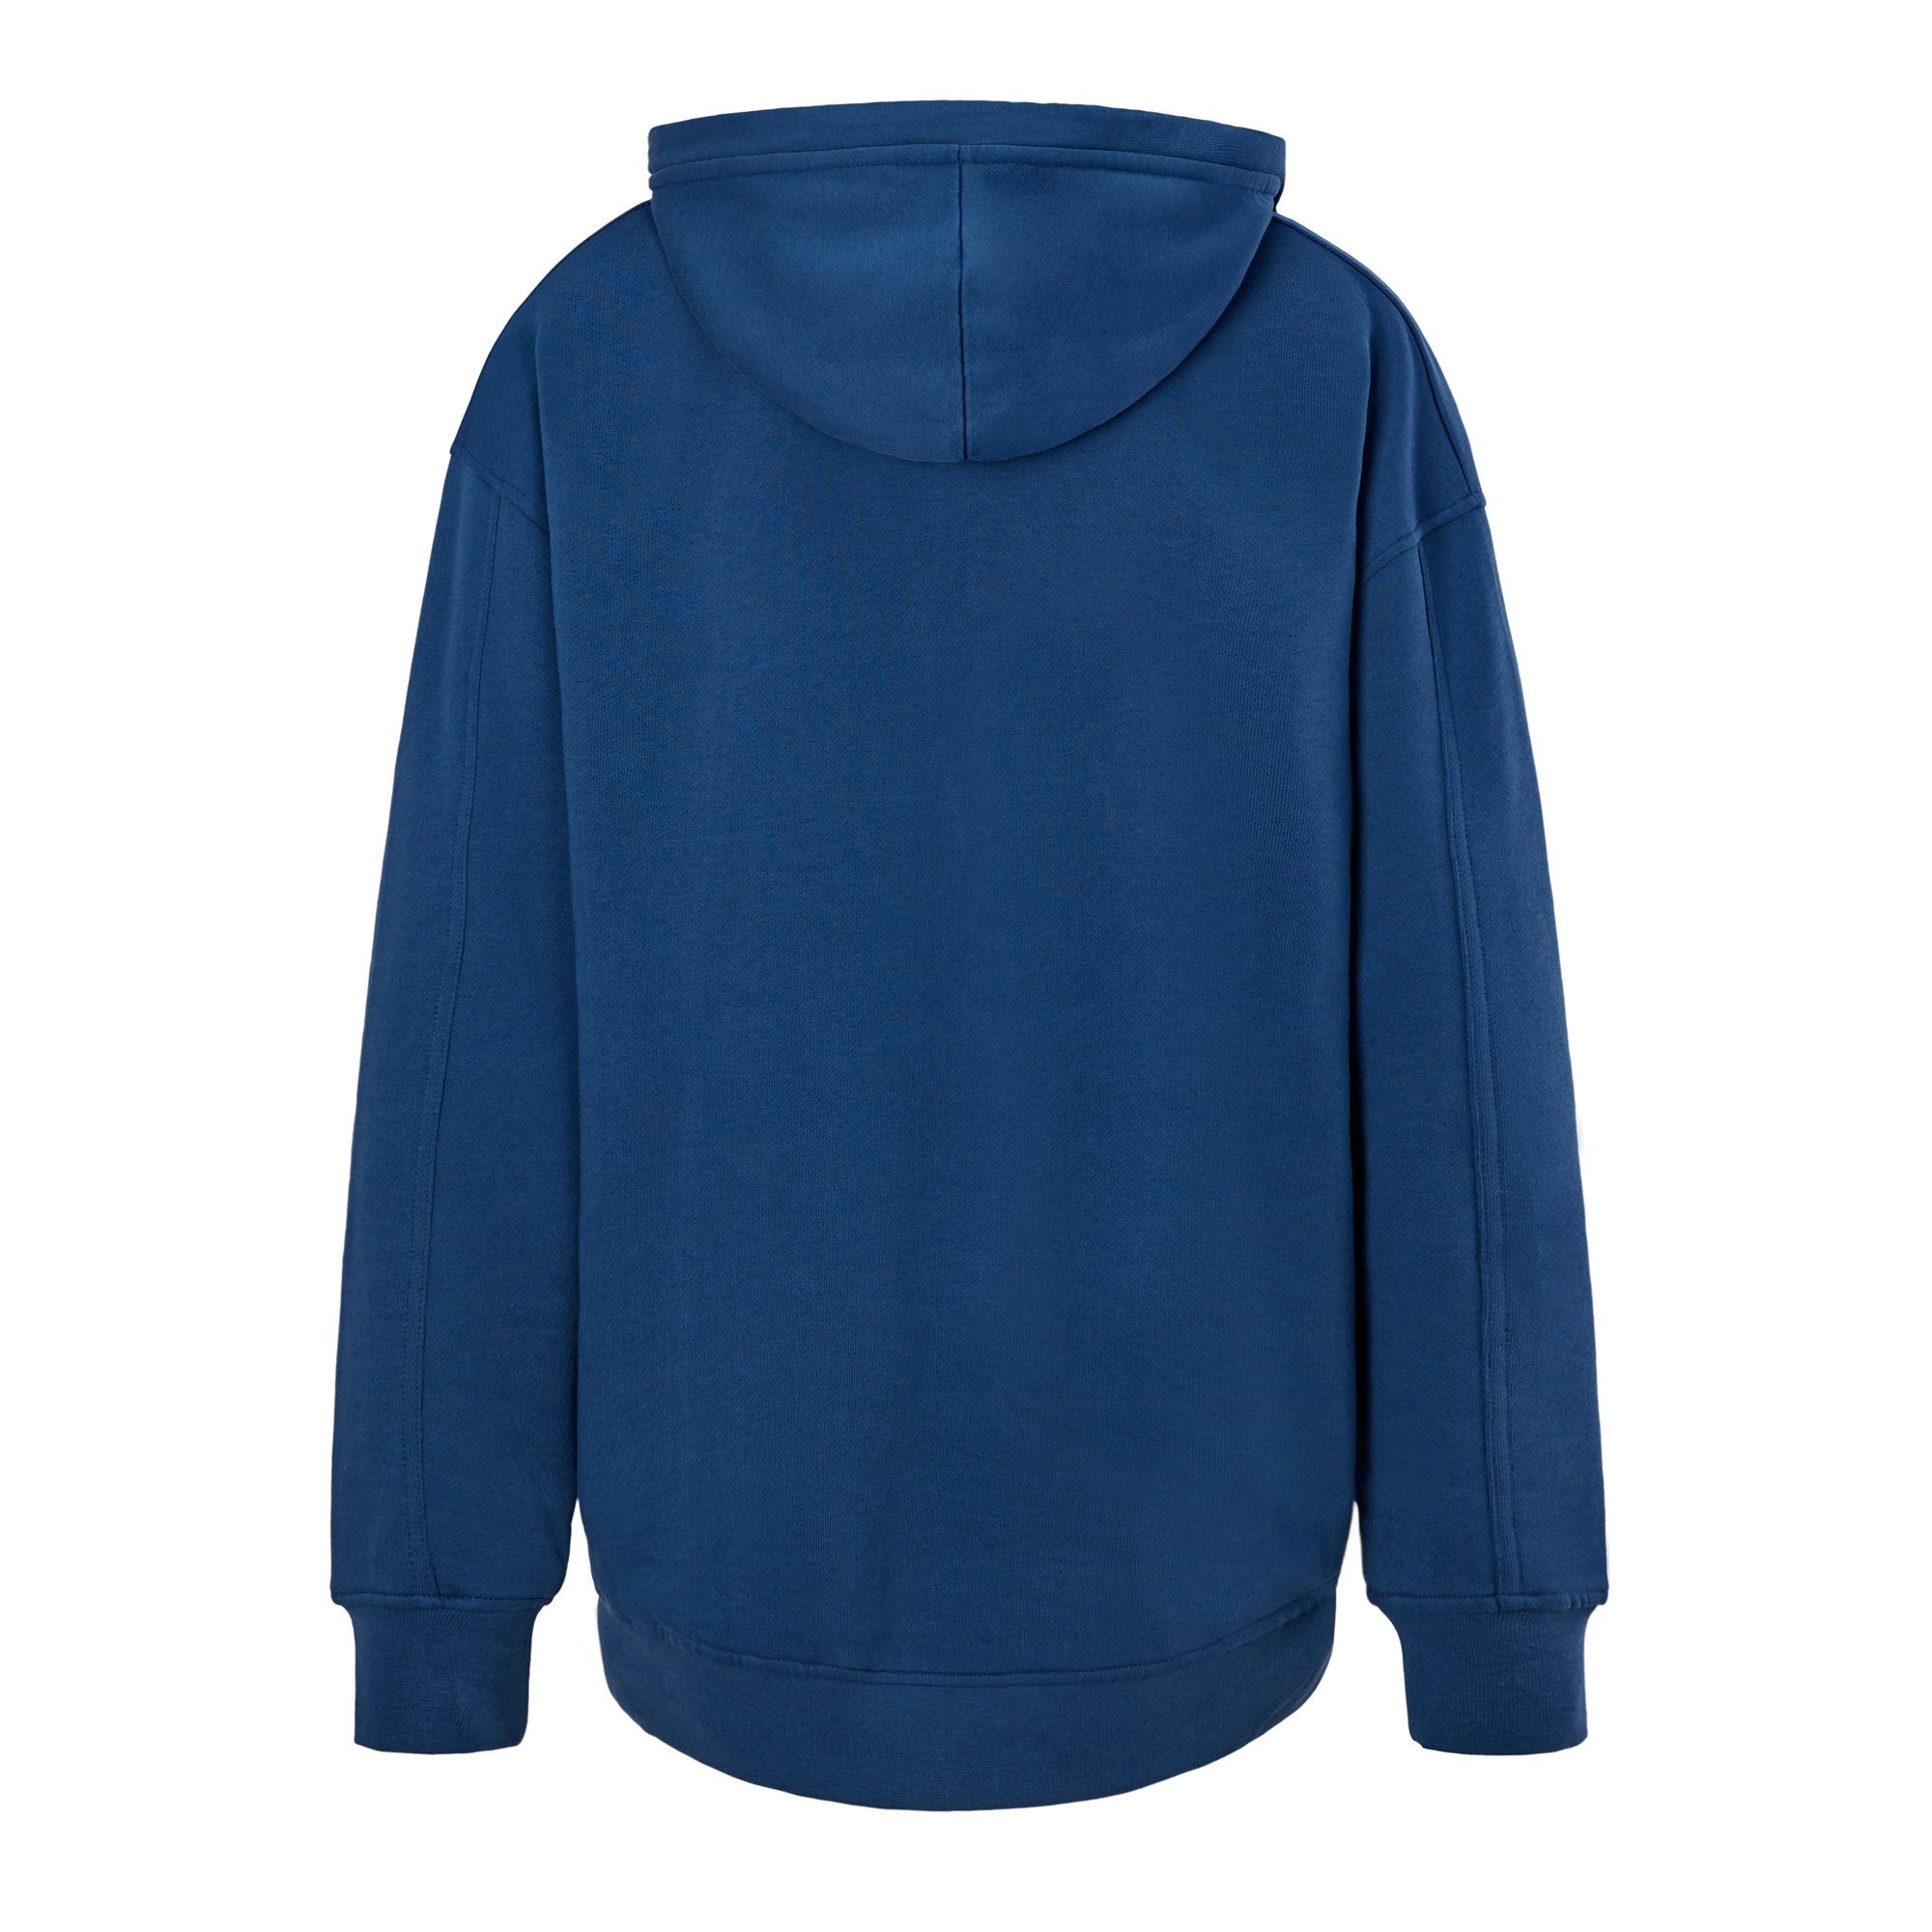 SeaYA Kapuzensweatshirt Sweatshirt Hoodie dunkelblau Stickerei) Dunkelblau Stickerei (schwarze Biobaumwolle